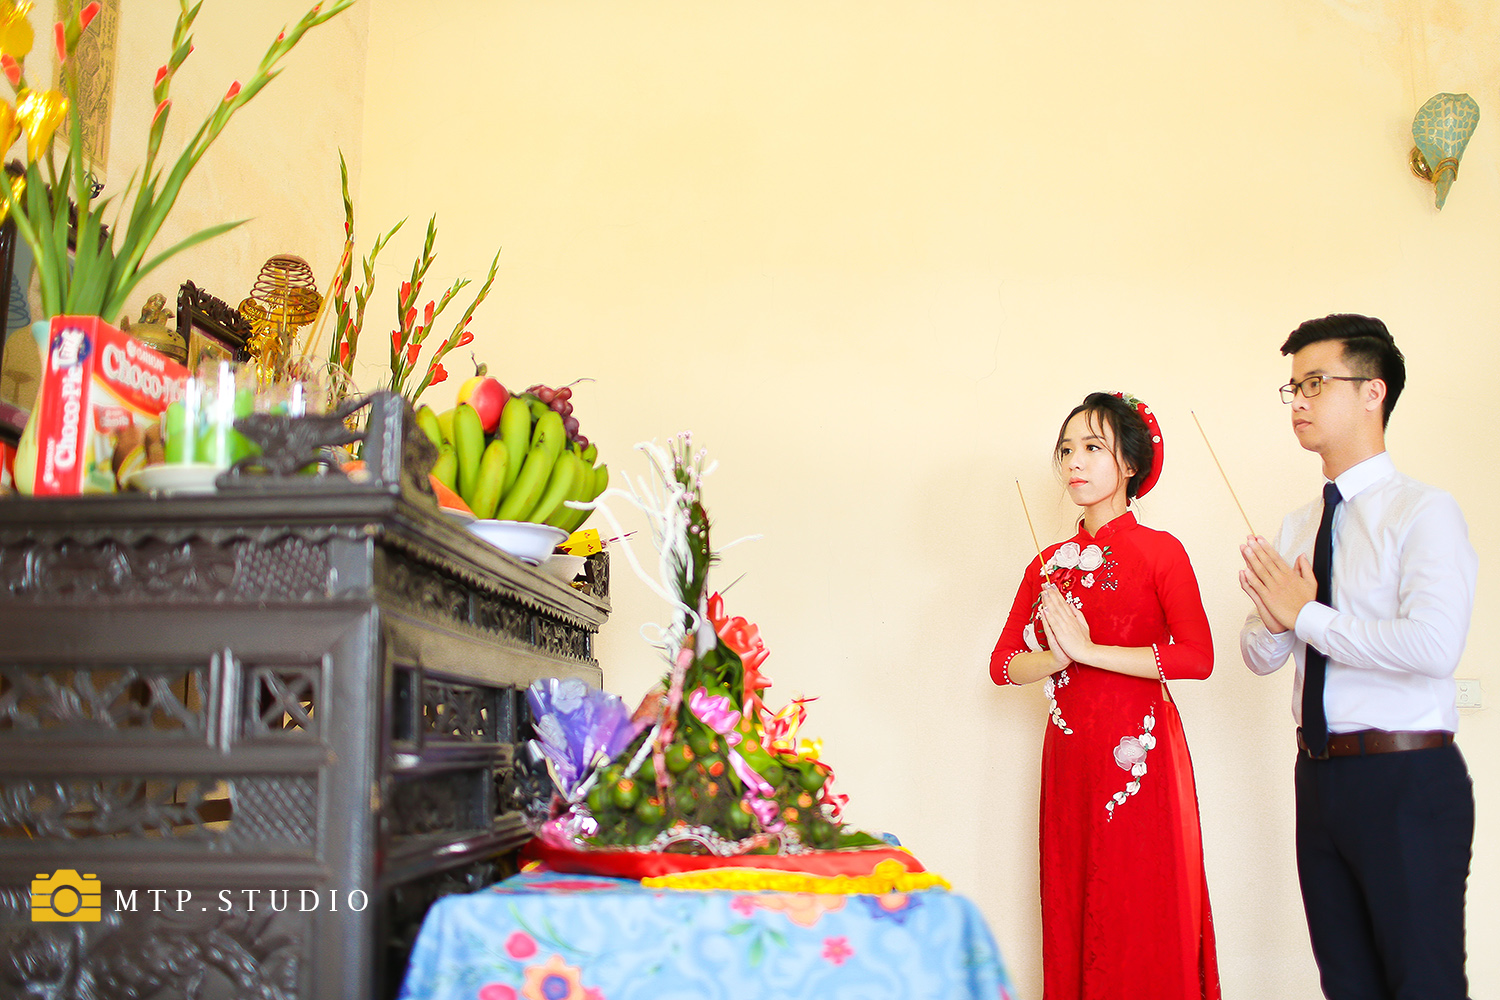 Tận hưởng những thước phim đầy lãng mạn và sáng tạo về đám cưới của chú rể và cô dâu tại Hà Nội. Hãy chứng kiến những khoảnh khắc đáng nhớ về đêm tiệc đầy sắc màu và tình cảm.